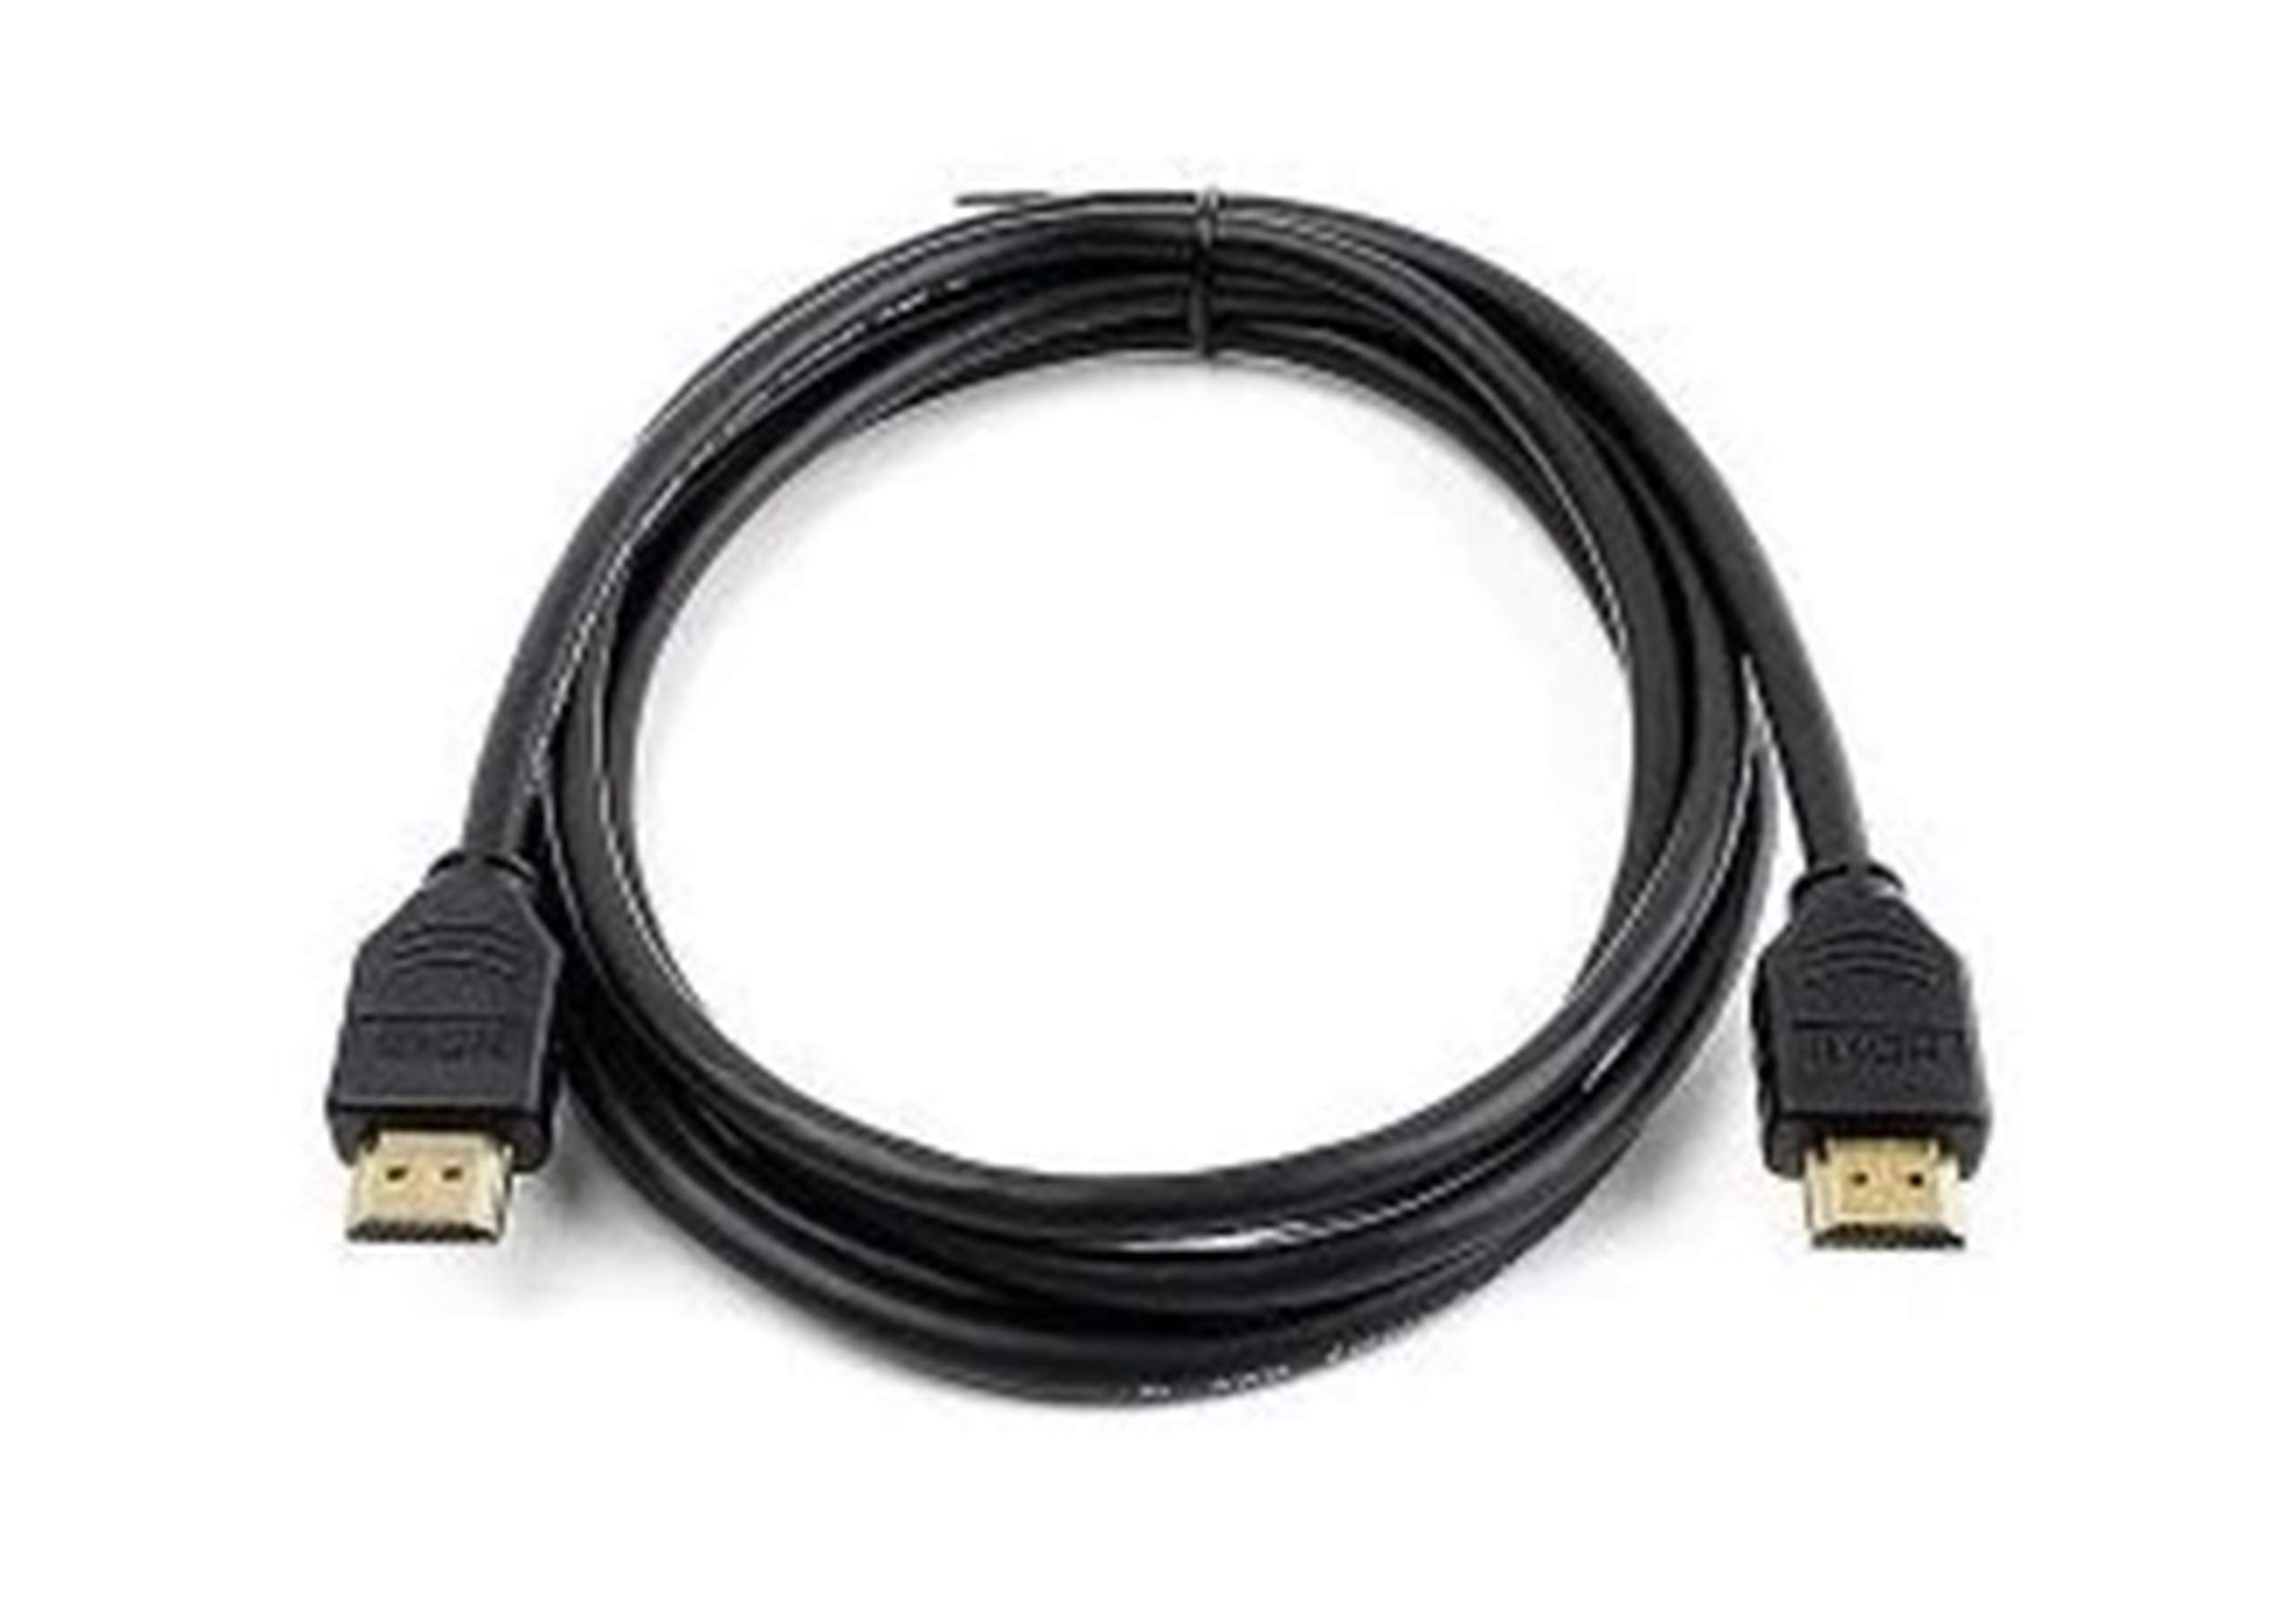 Presentation Cable 8m Grey Hdmi Cisco Accessories Cab Pres 2hdmi Gr 882658980107